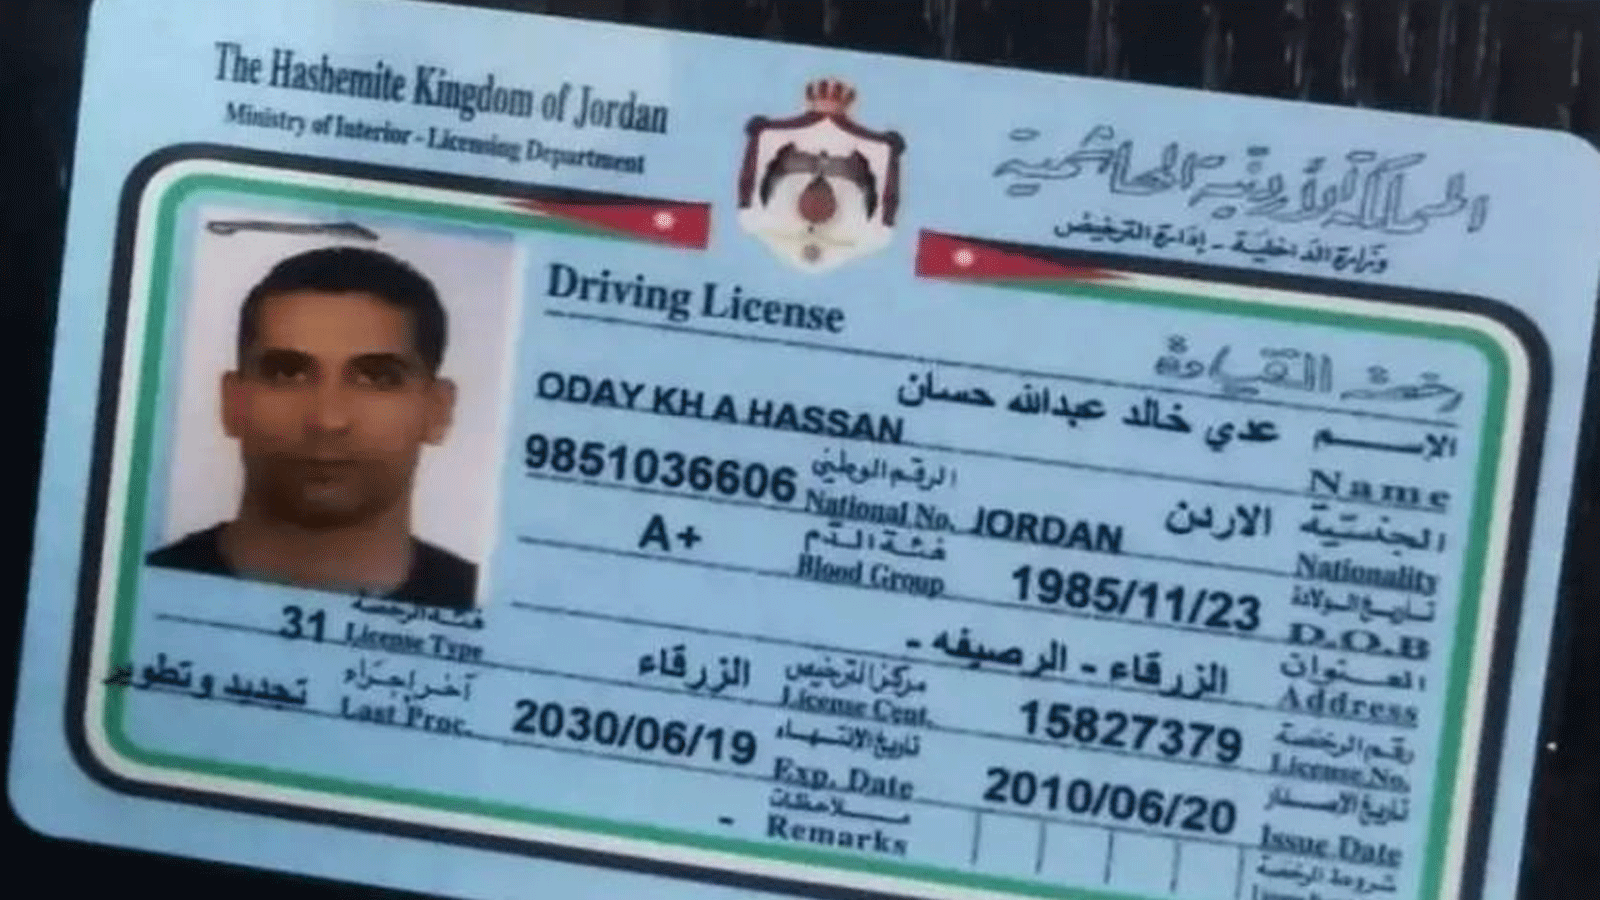 صورة رخصة قيادة السيارة الخاصة بقاتل الطالبة الجامعية الأردنية